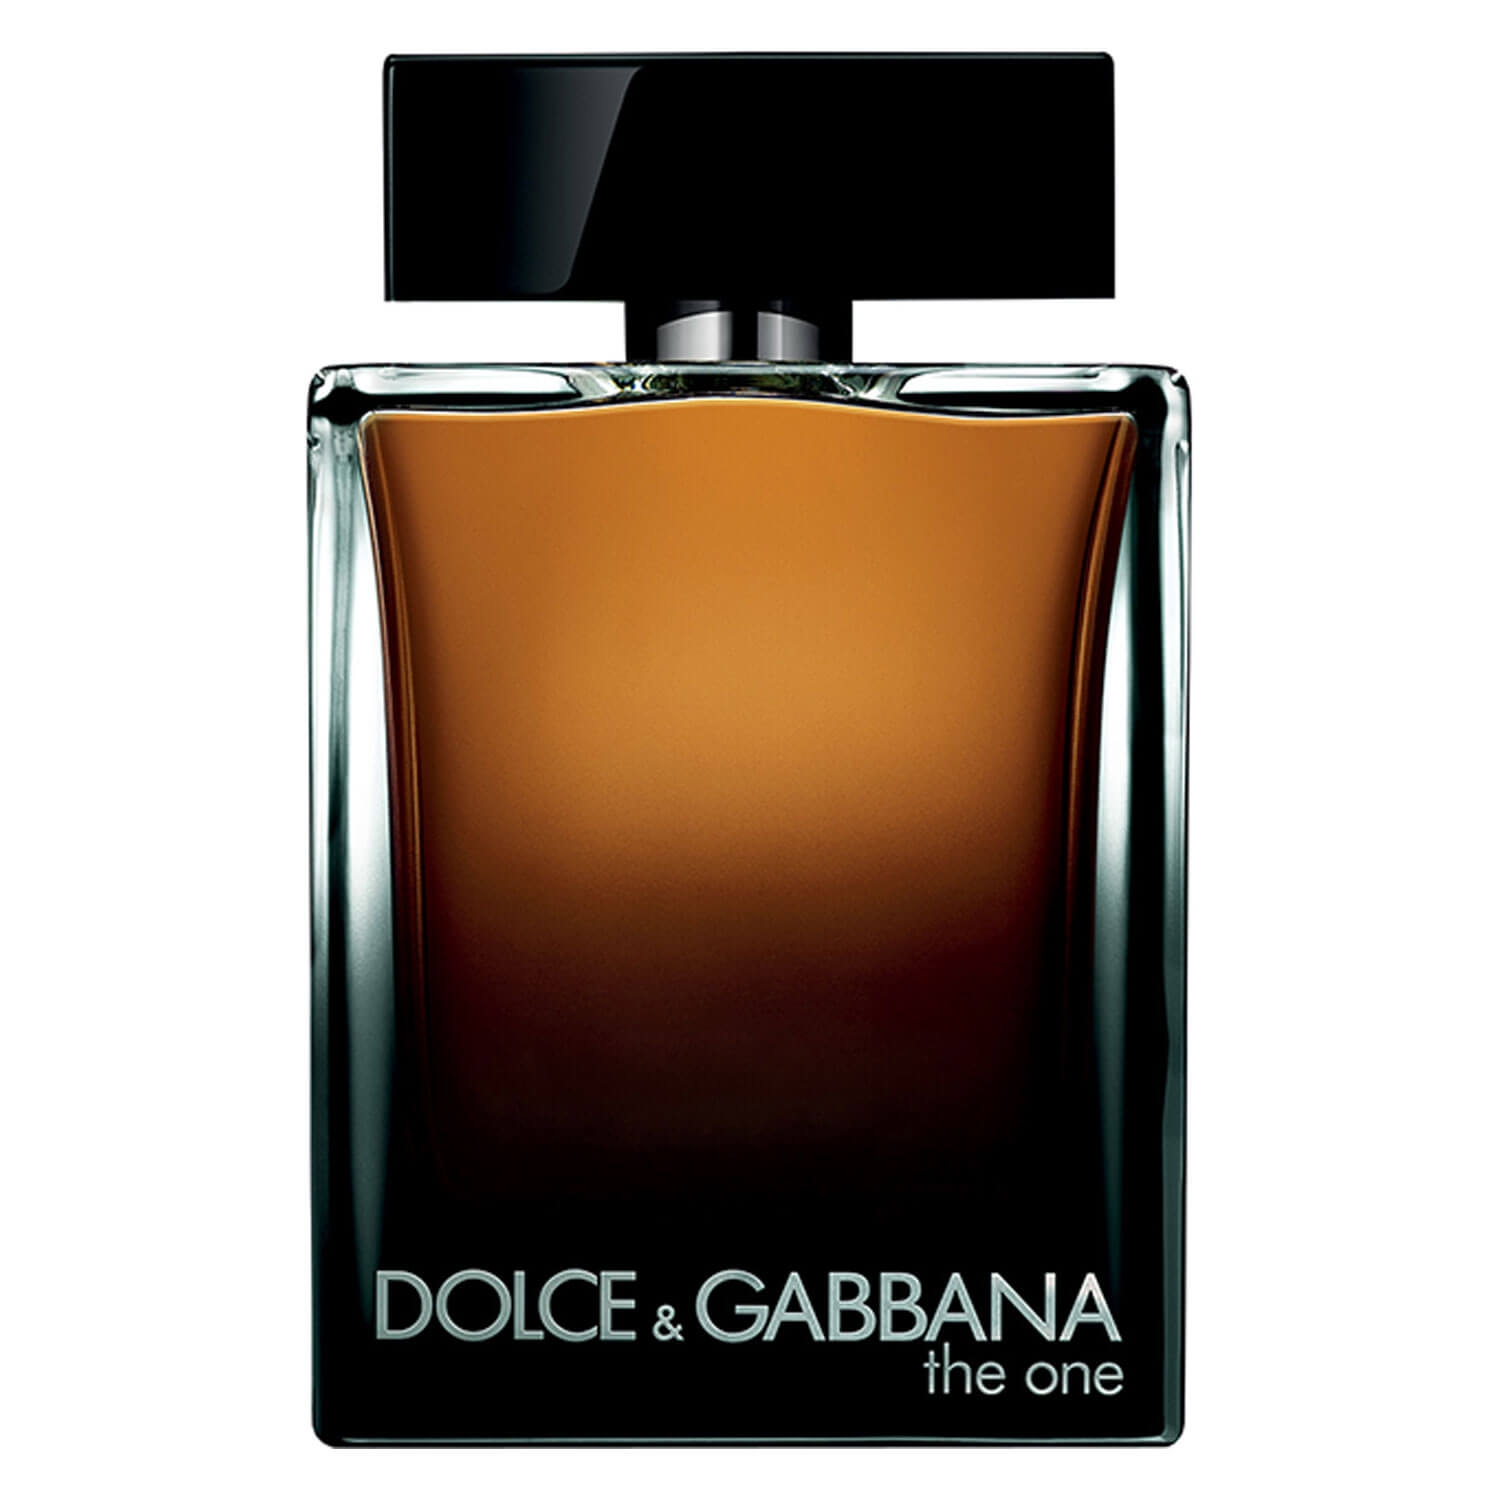 Produktbild von D&G The One - For Men Eau de Parfum